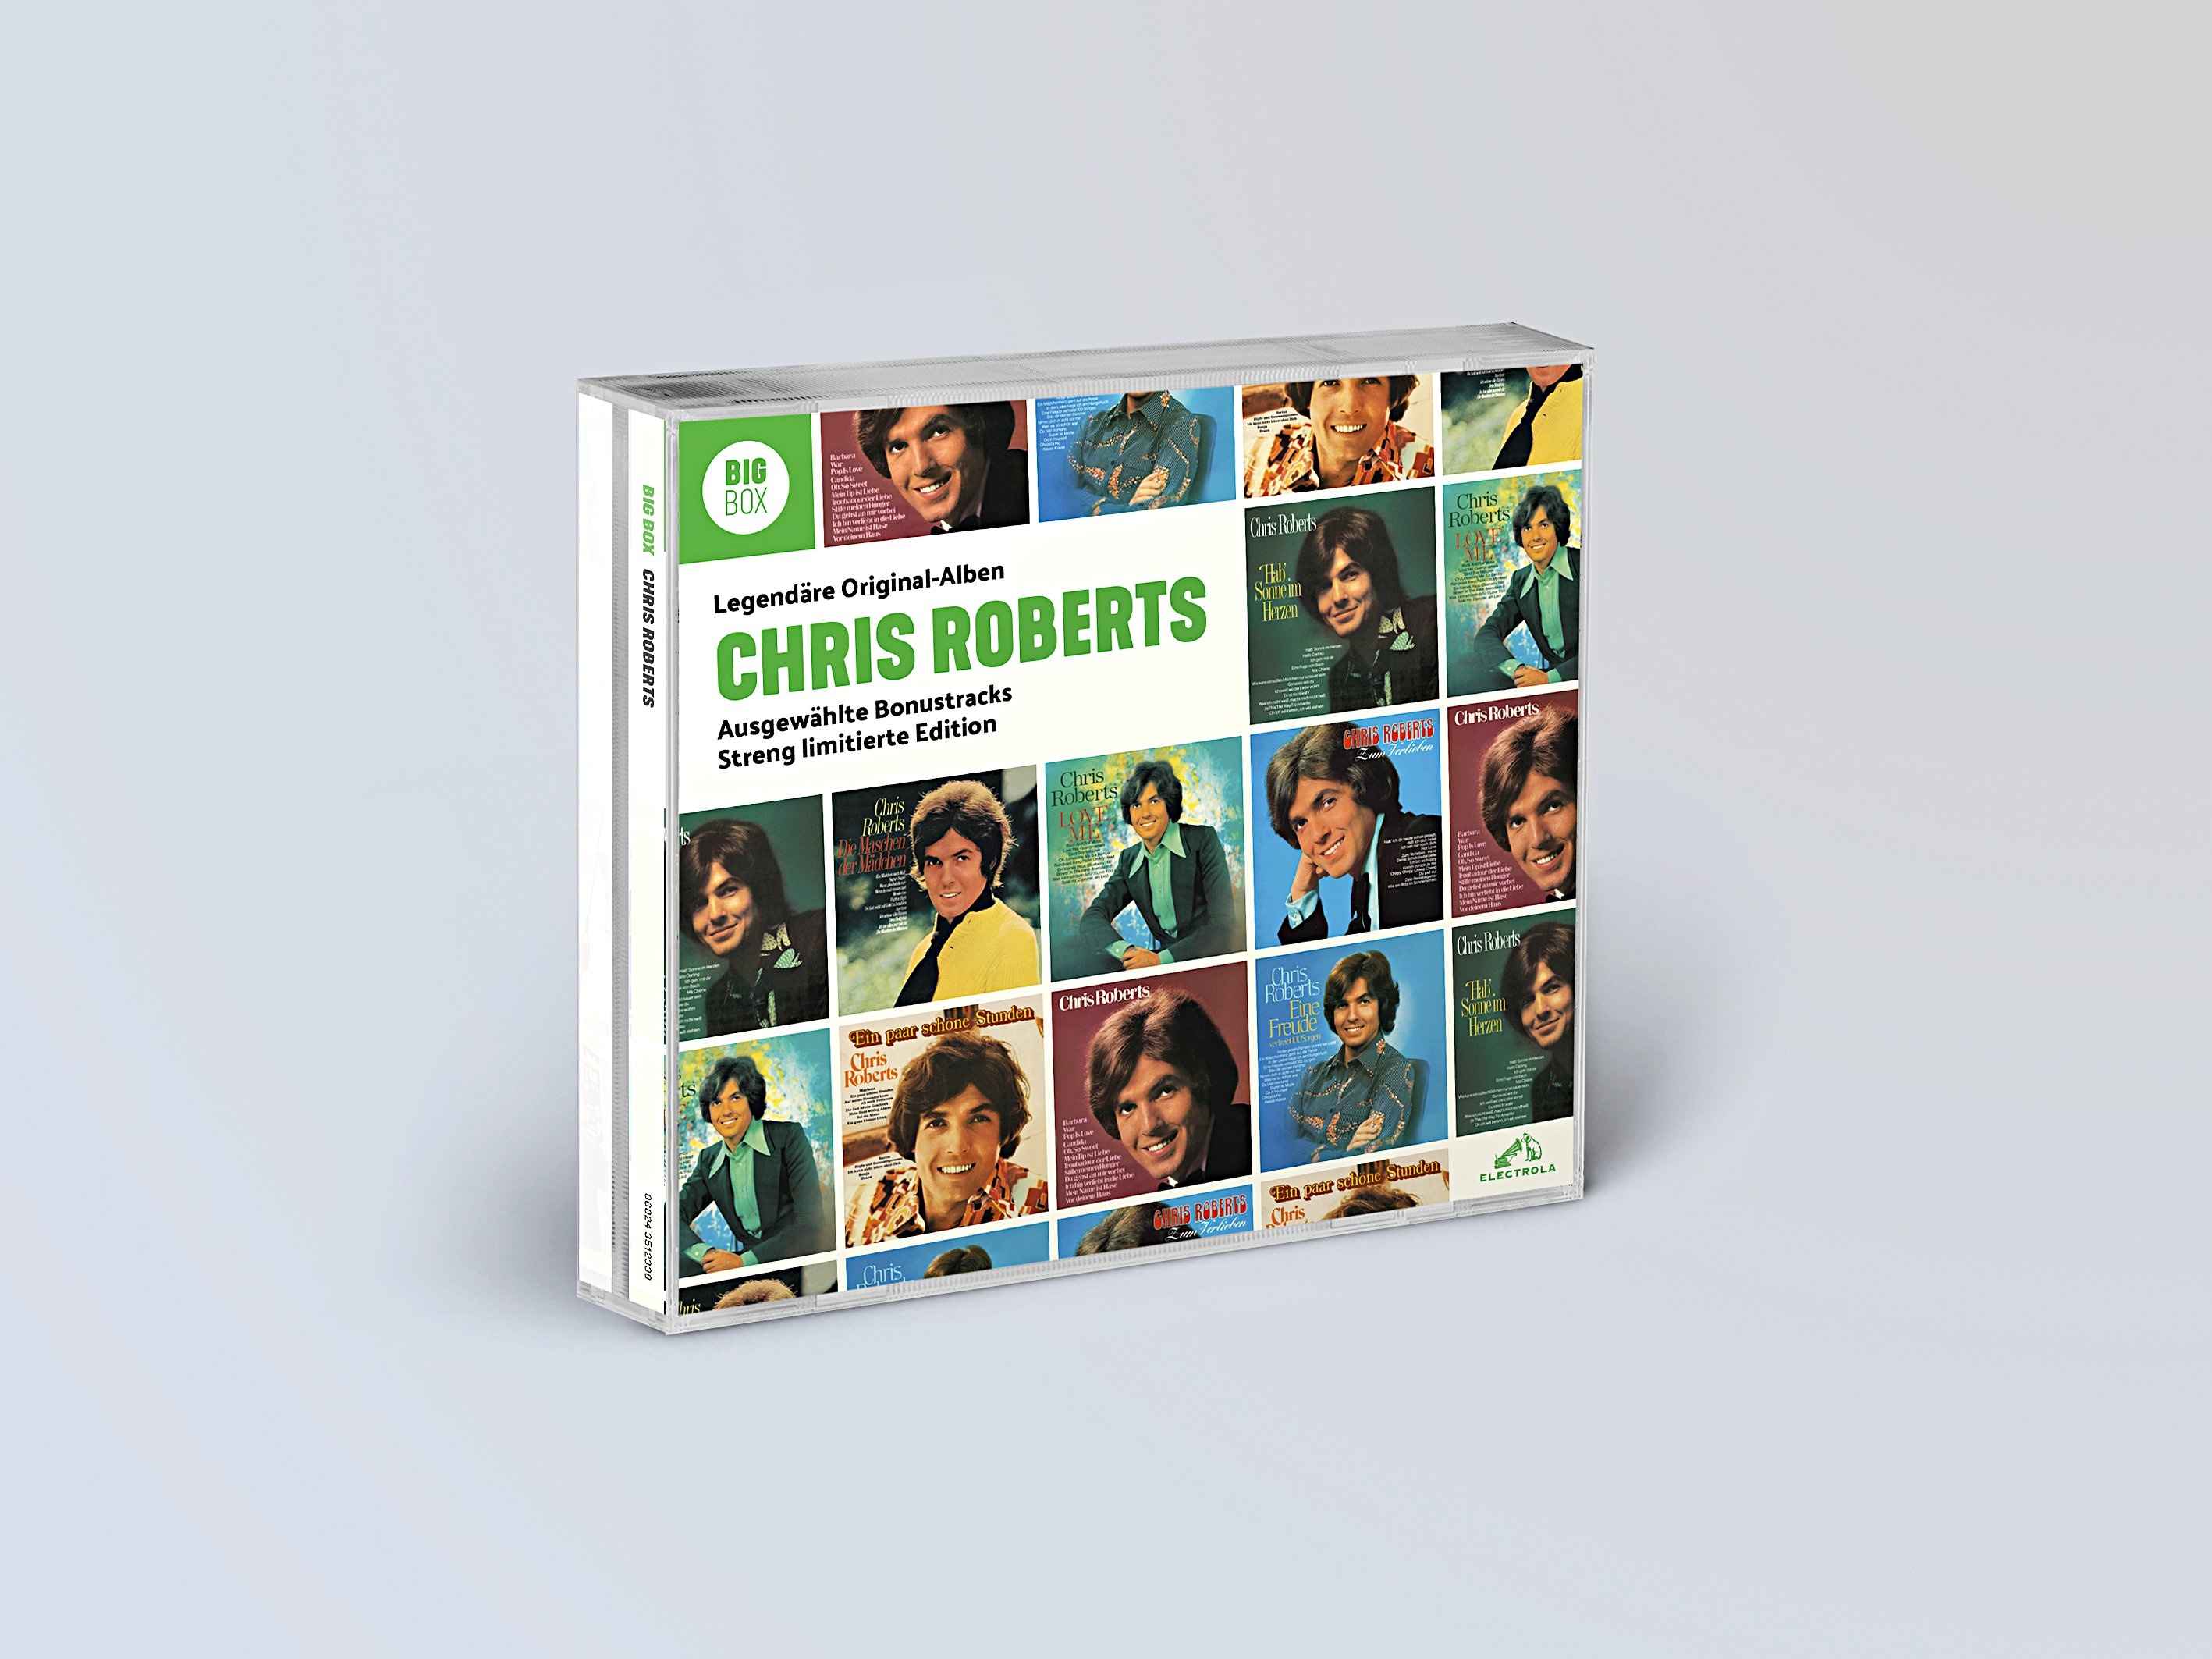 Big Box - Die legendären Originalalben der Schlagerstars (5CD-Box) - Chris Roberts. (CD)